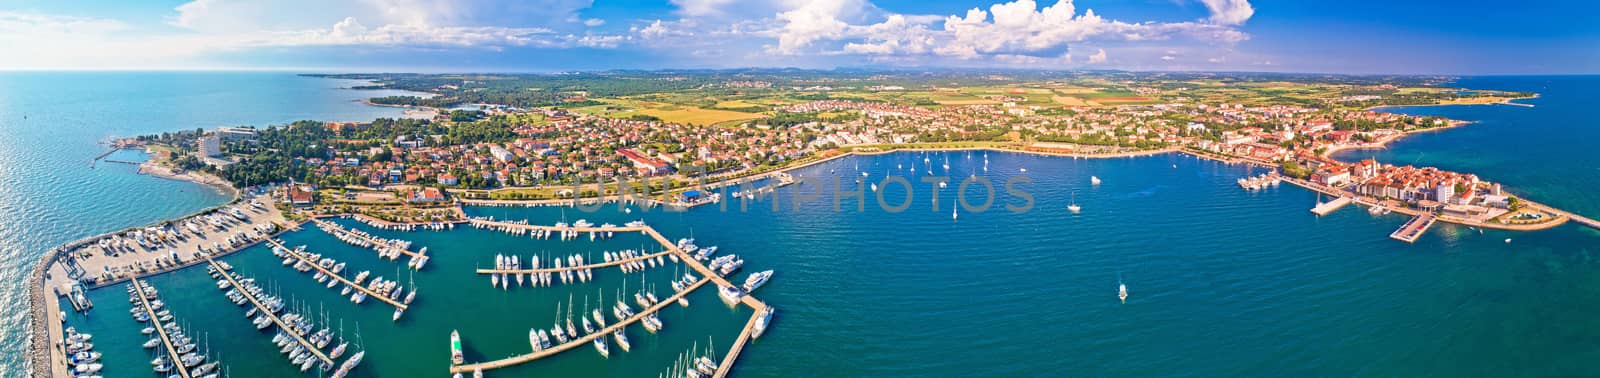 Adriatic coastline of Umag architecture aerial view, archipelago of Istria region, Croatia